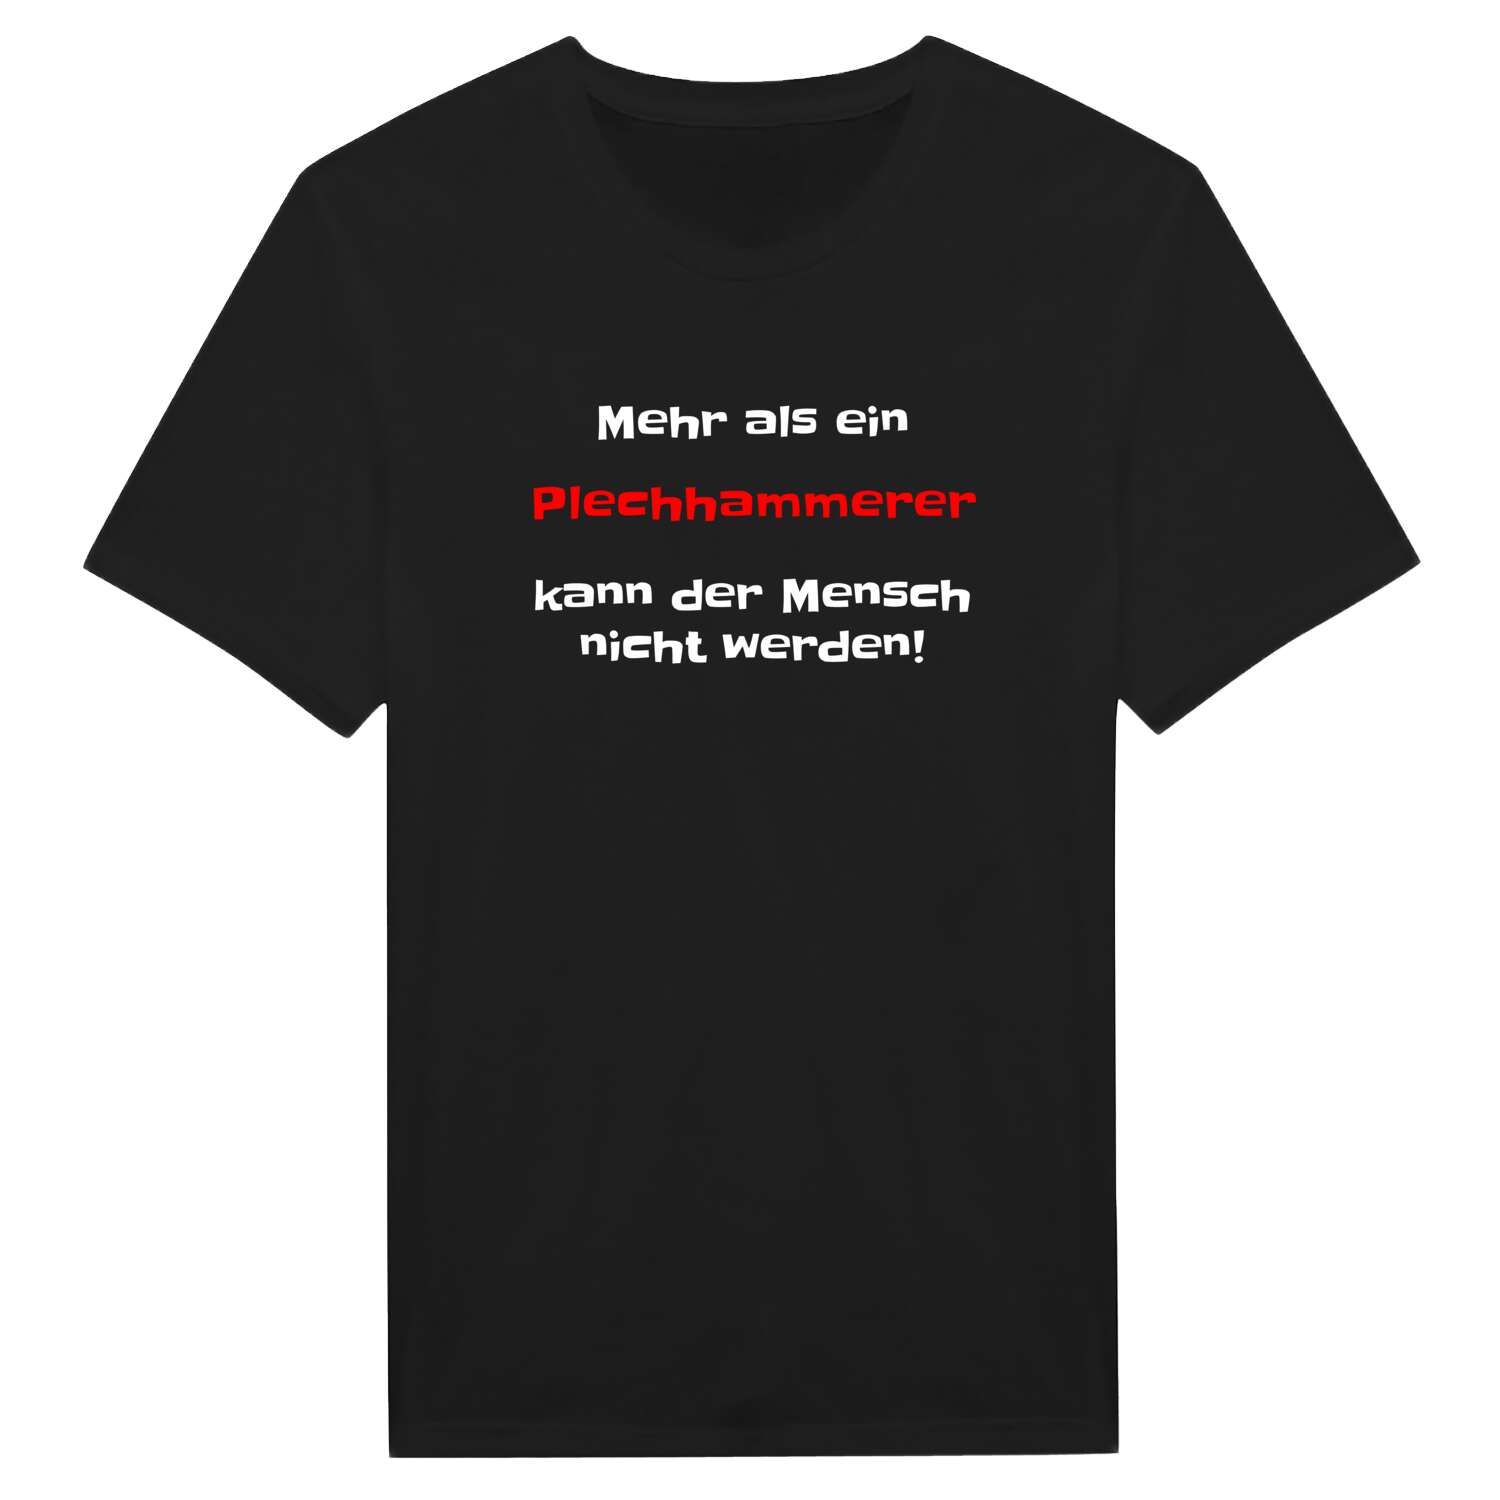 Plechhammer T-Shirt »Mehr als ein«